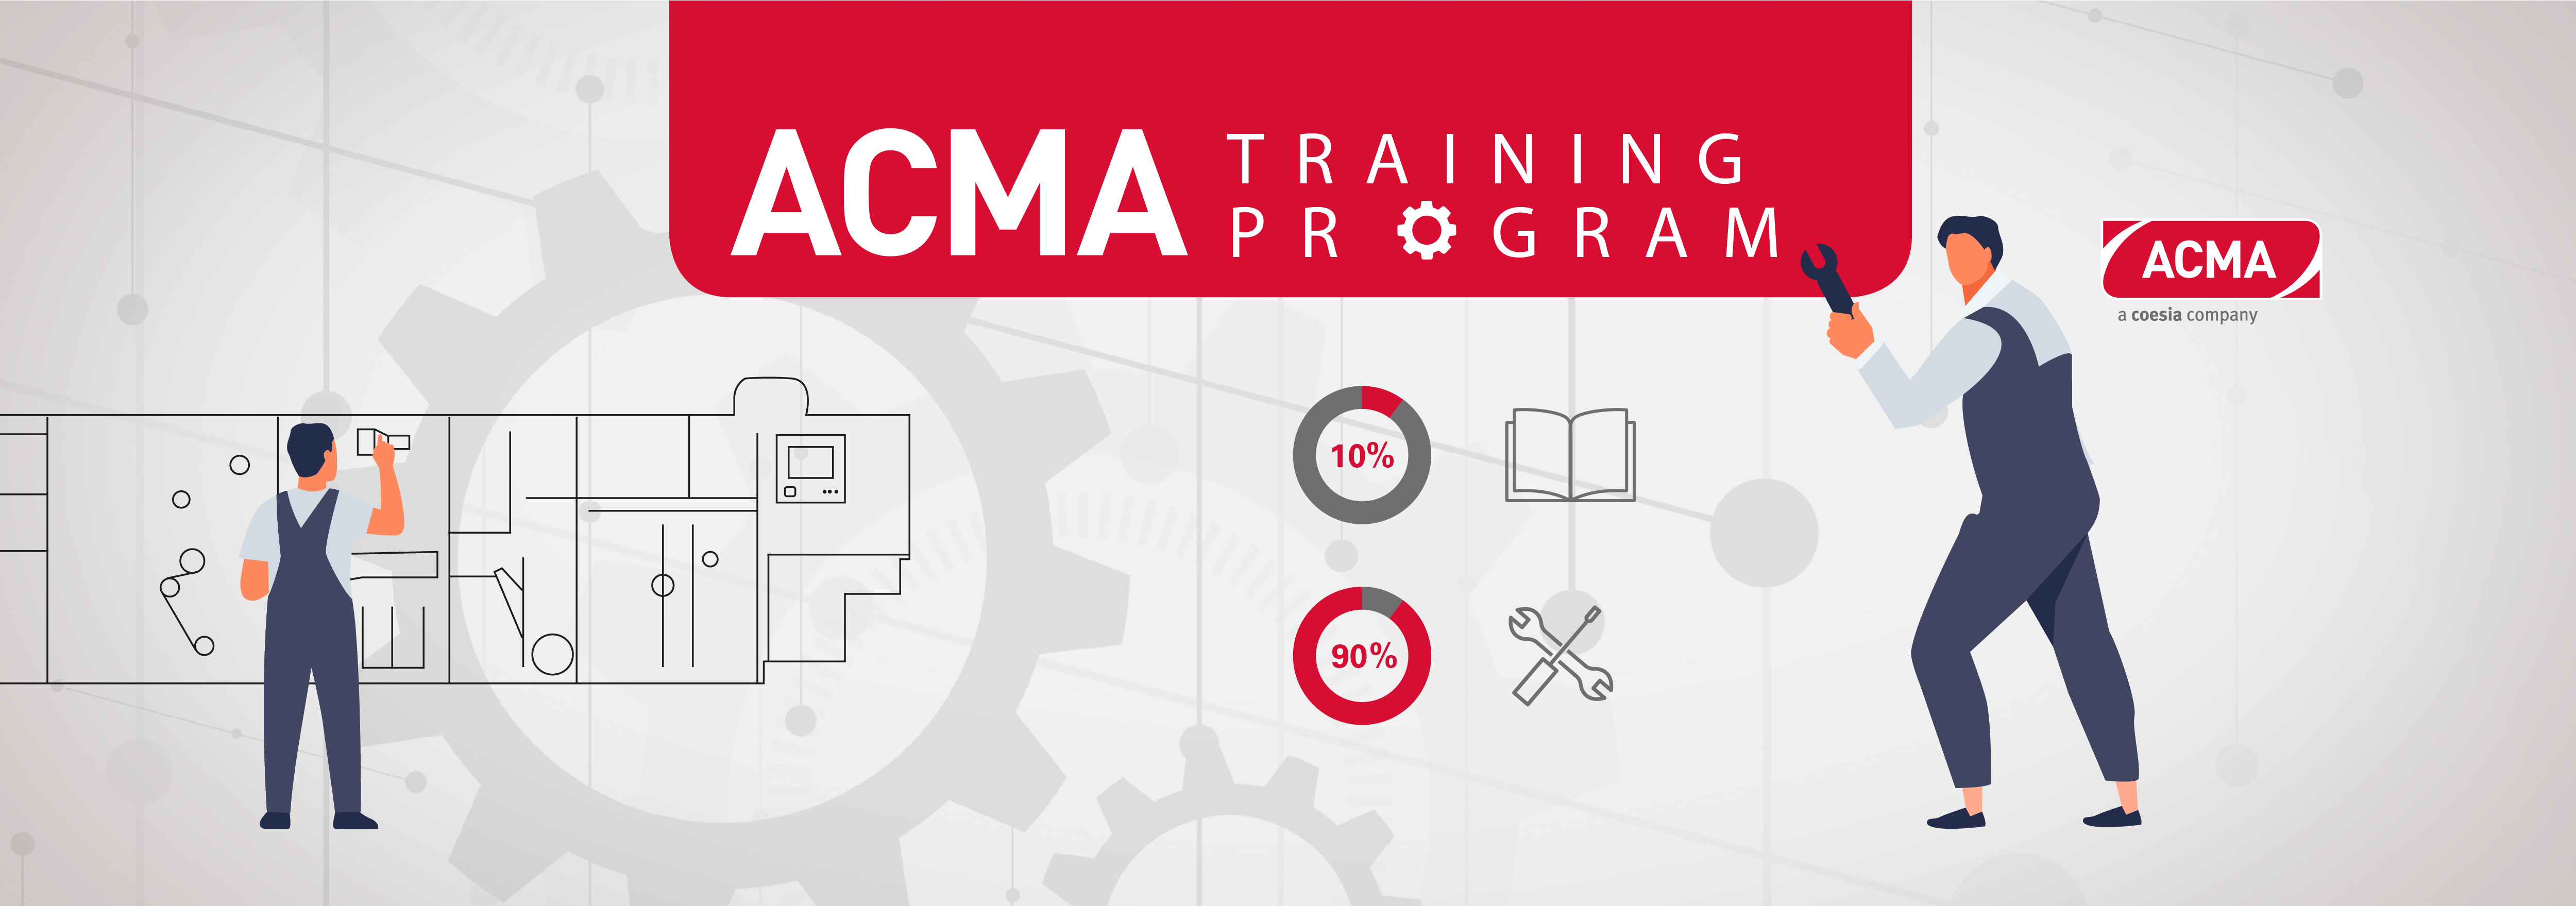 ACMA Training Program cover